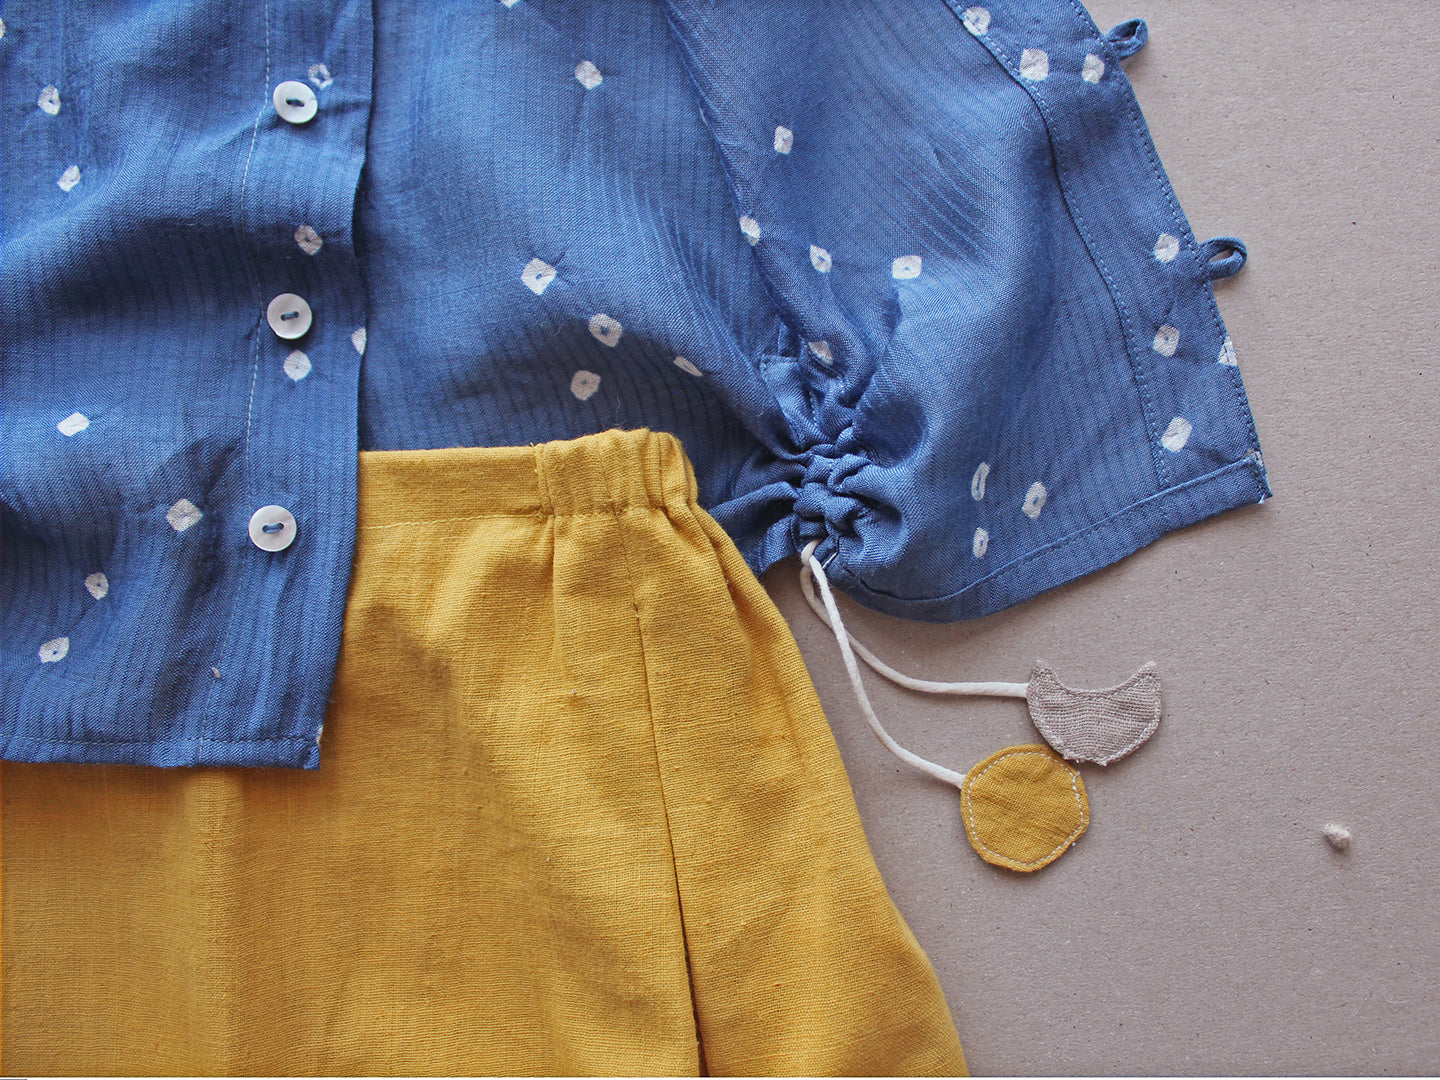 Sravana- Blue Drawstring Baby/Toddler Shirt and Pants Set